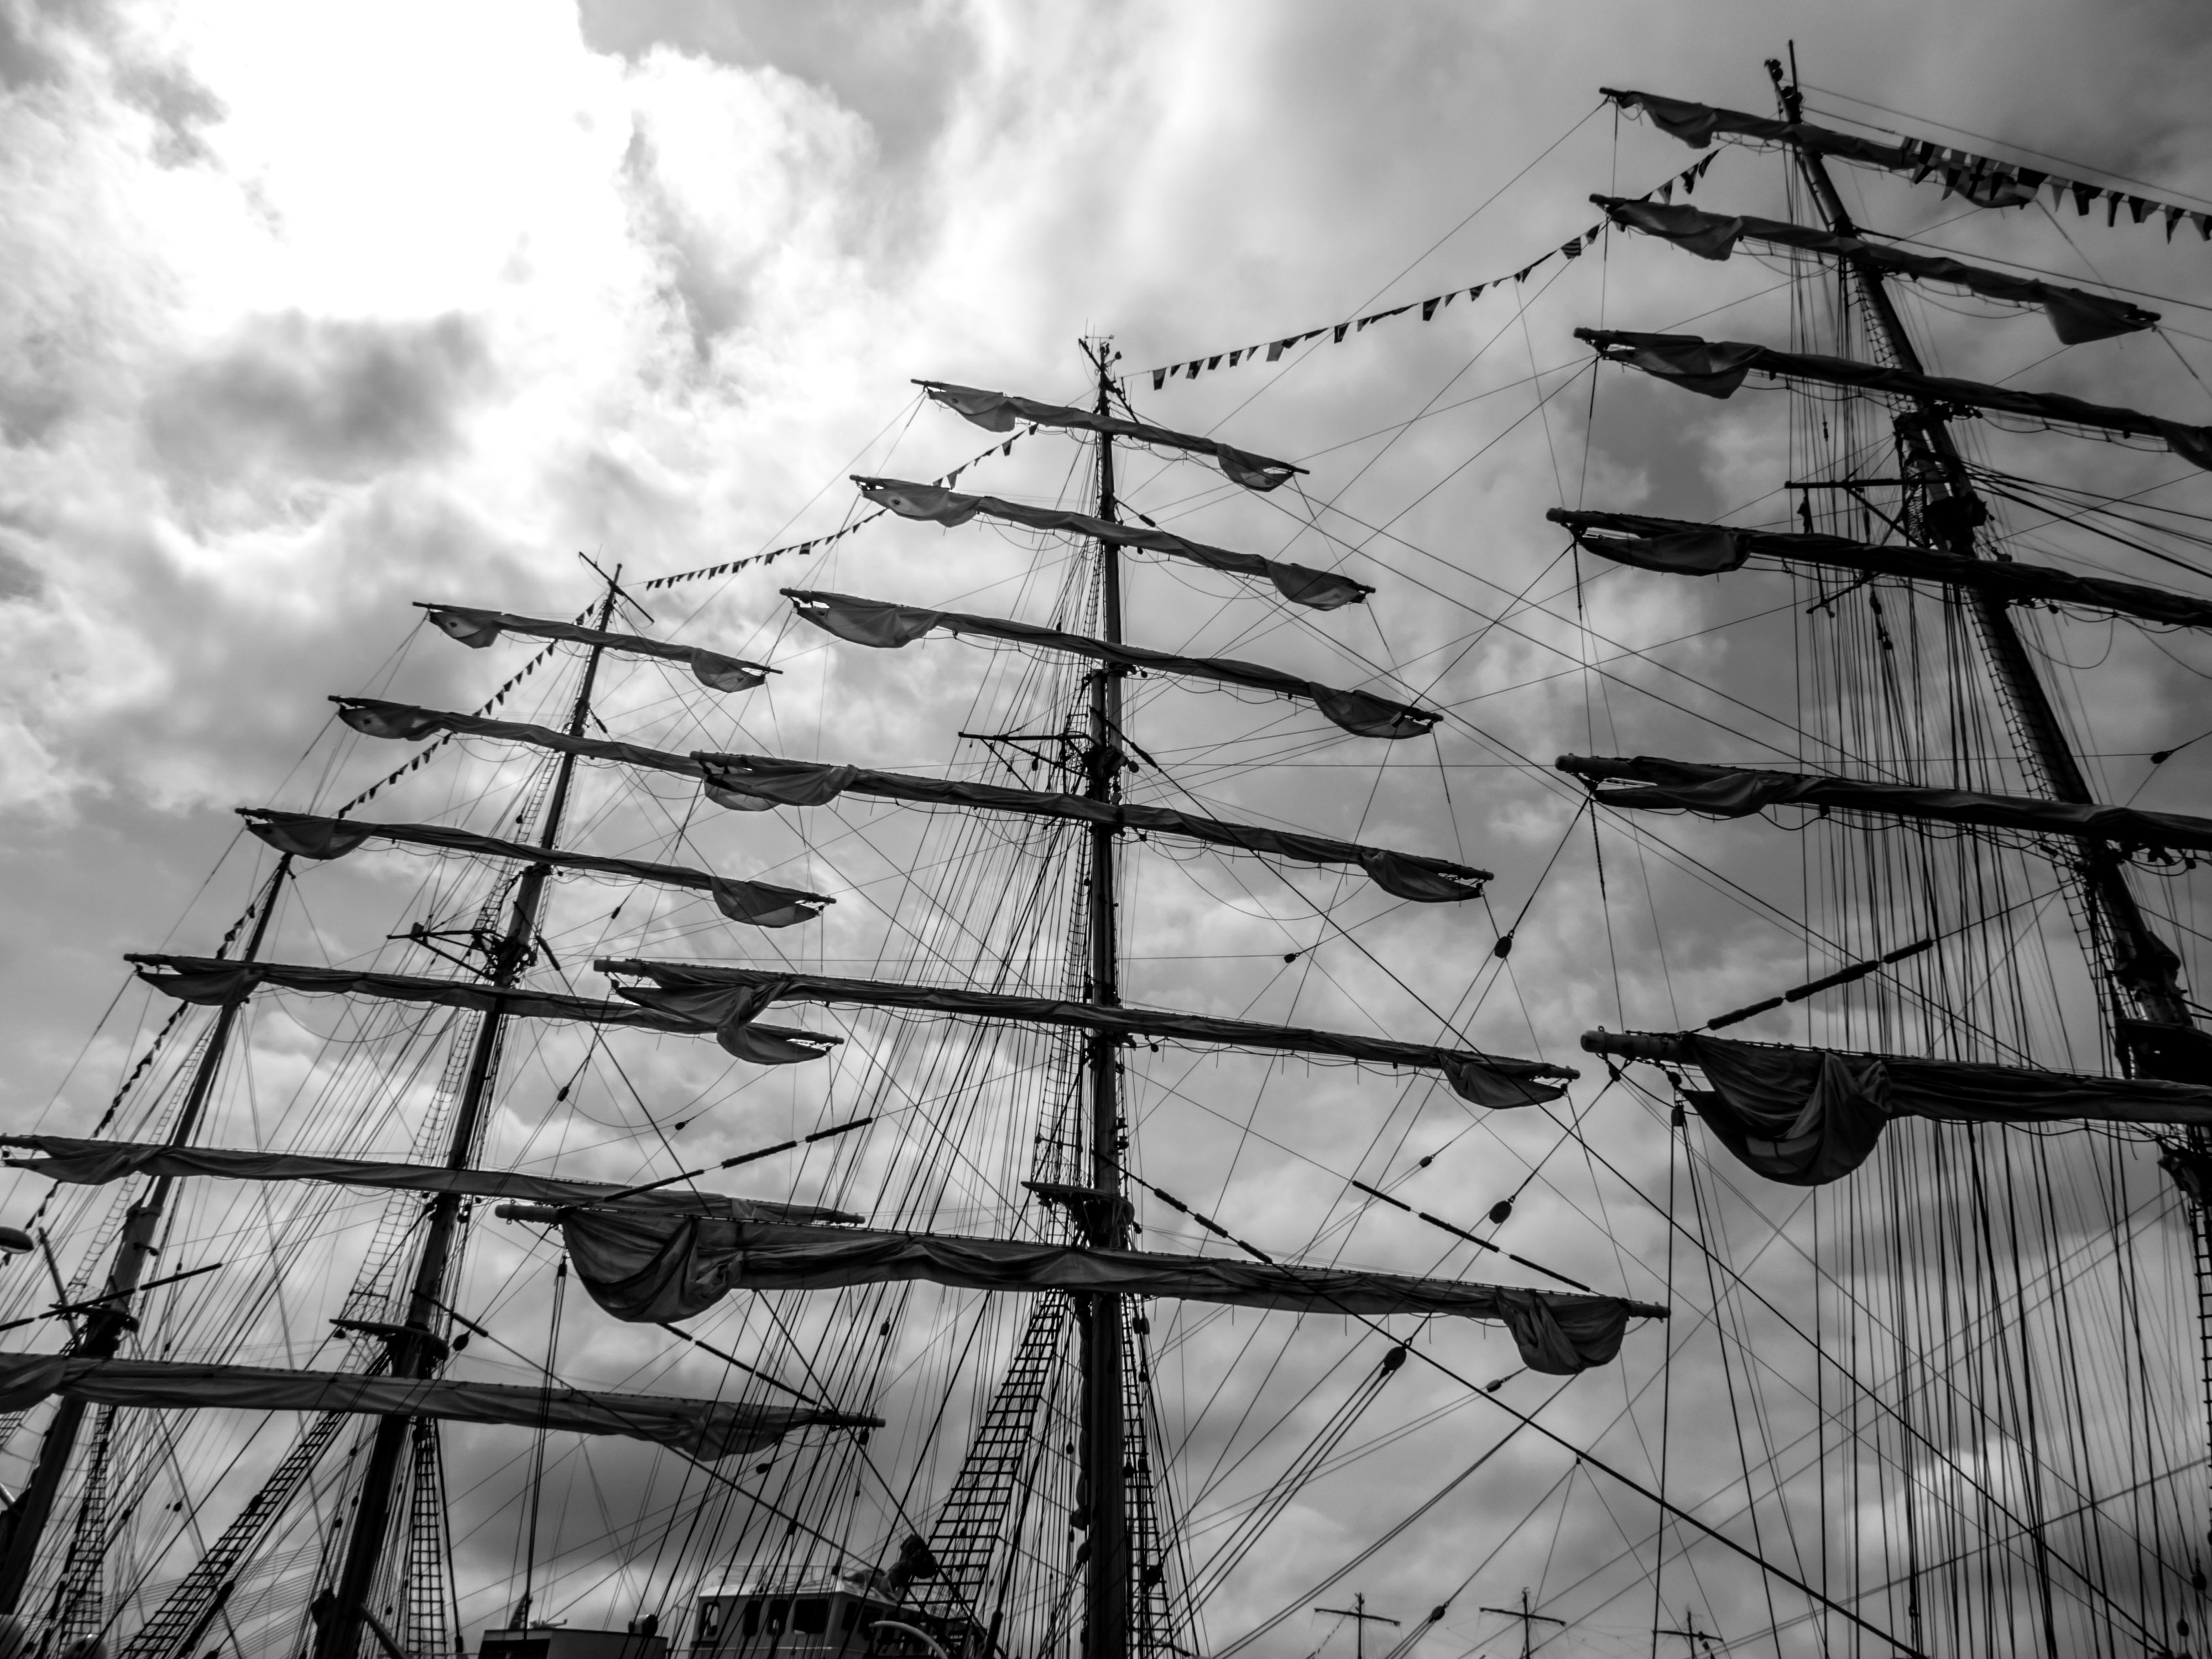 Sailing ship's masts photo